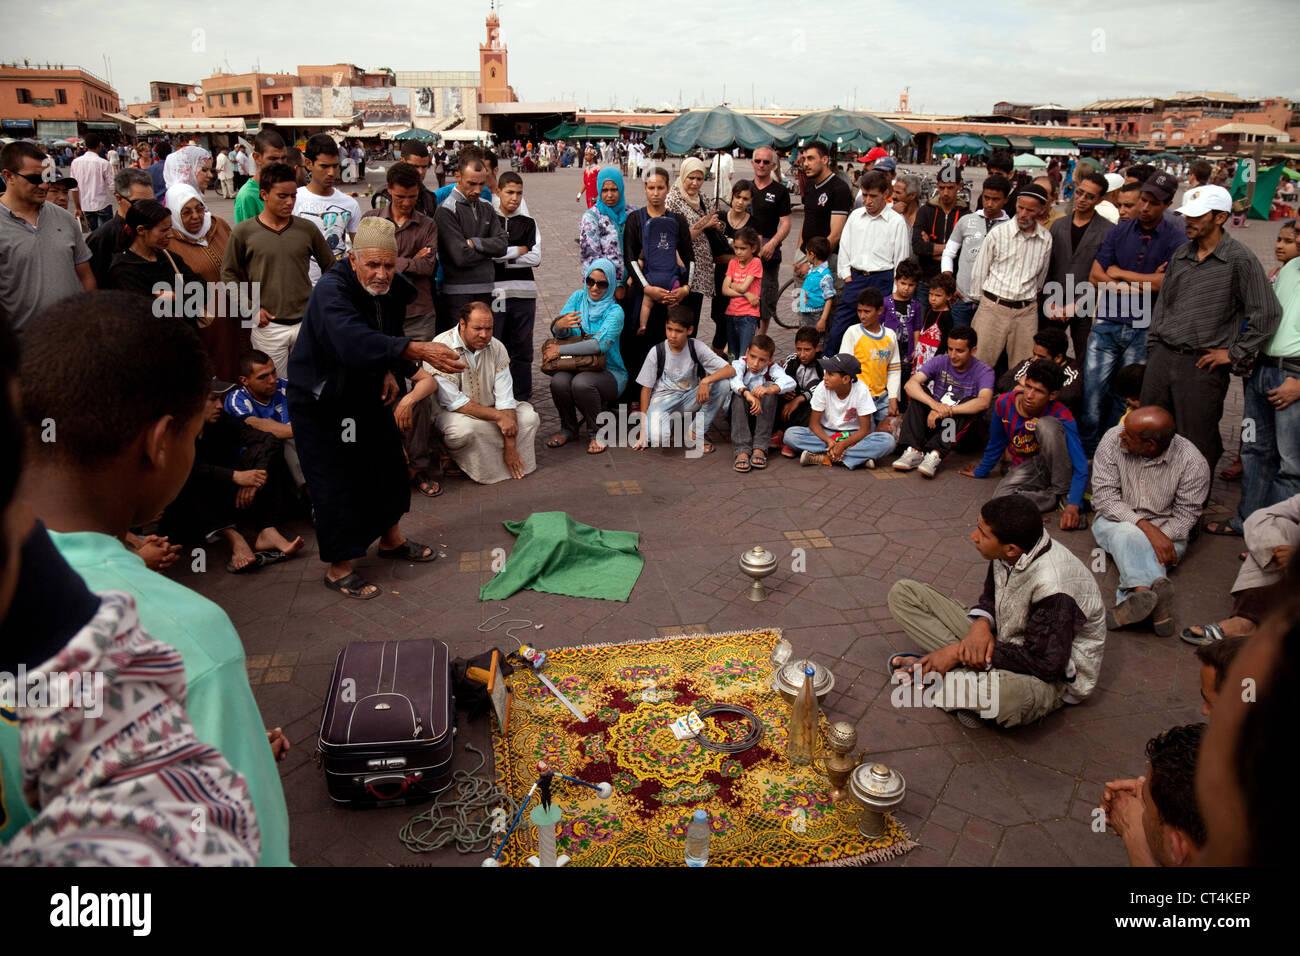 Arabische Erzähler und Masse, Djemma el Fna Marrakesch Marokko Afrika Stockfoto